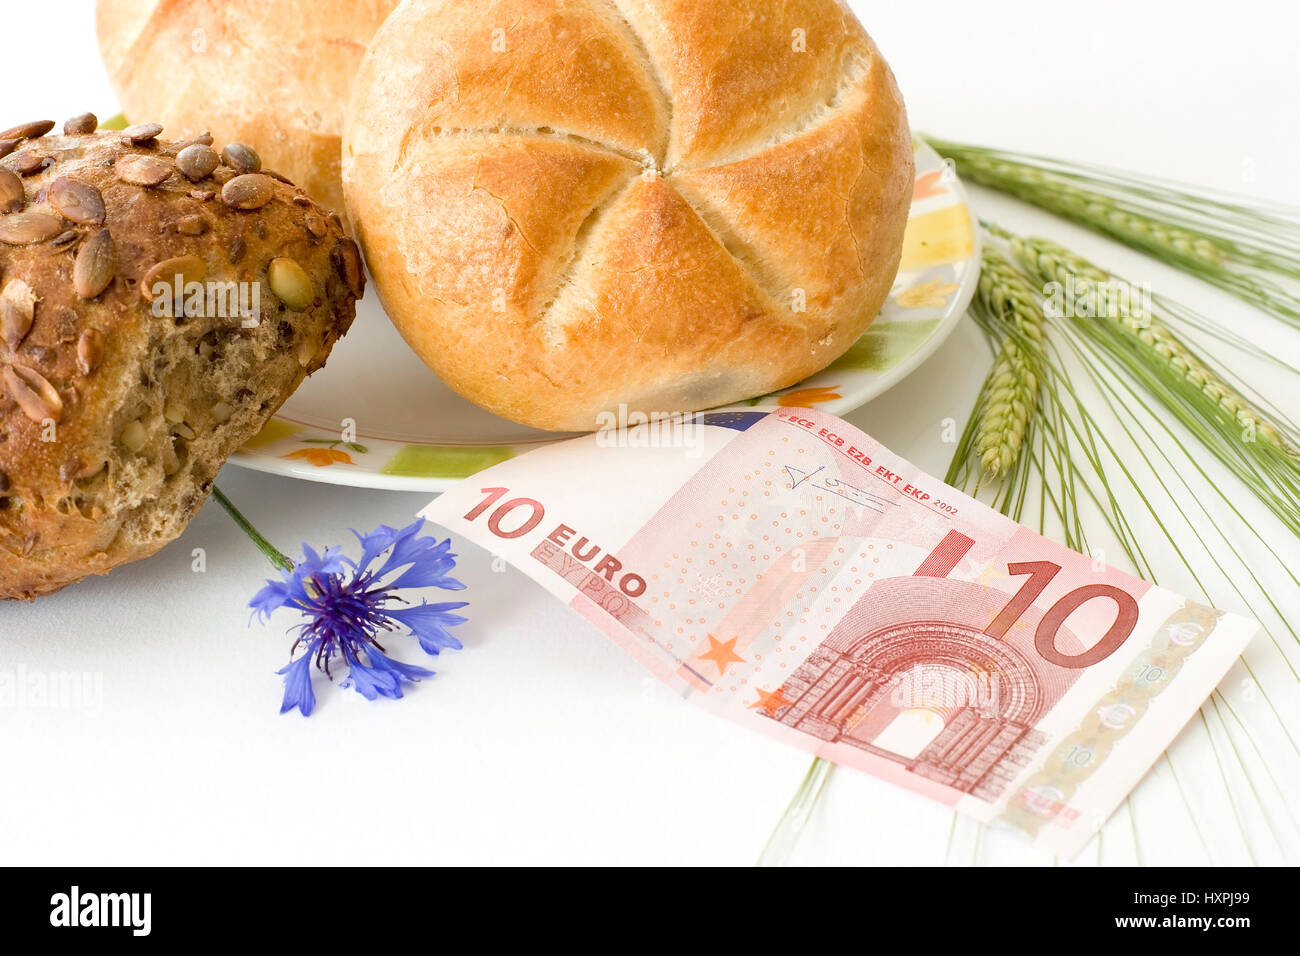 Los bollos de pan con diez euronotes y grano, mit Brötchen zehn Euroschein und Getreide Foto de stock